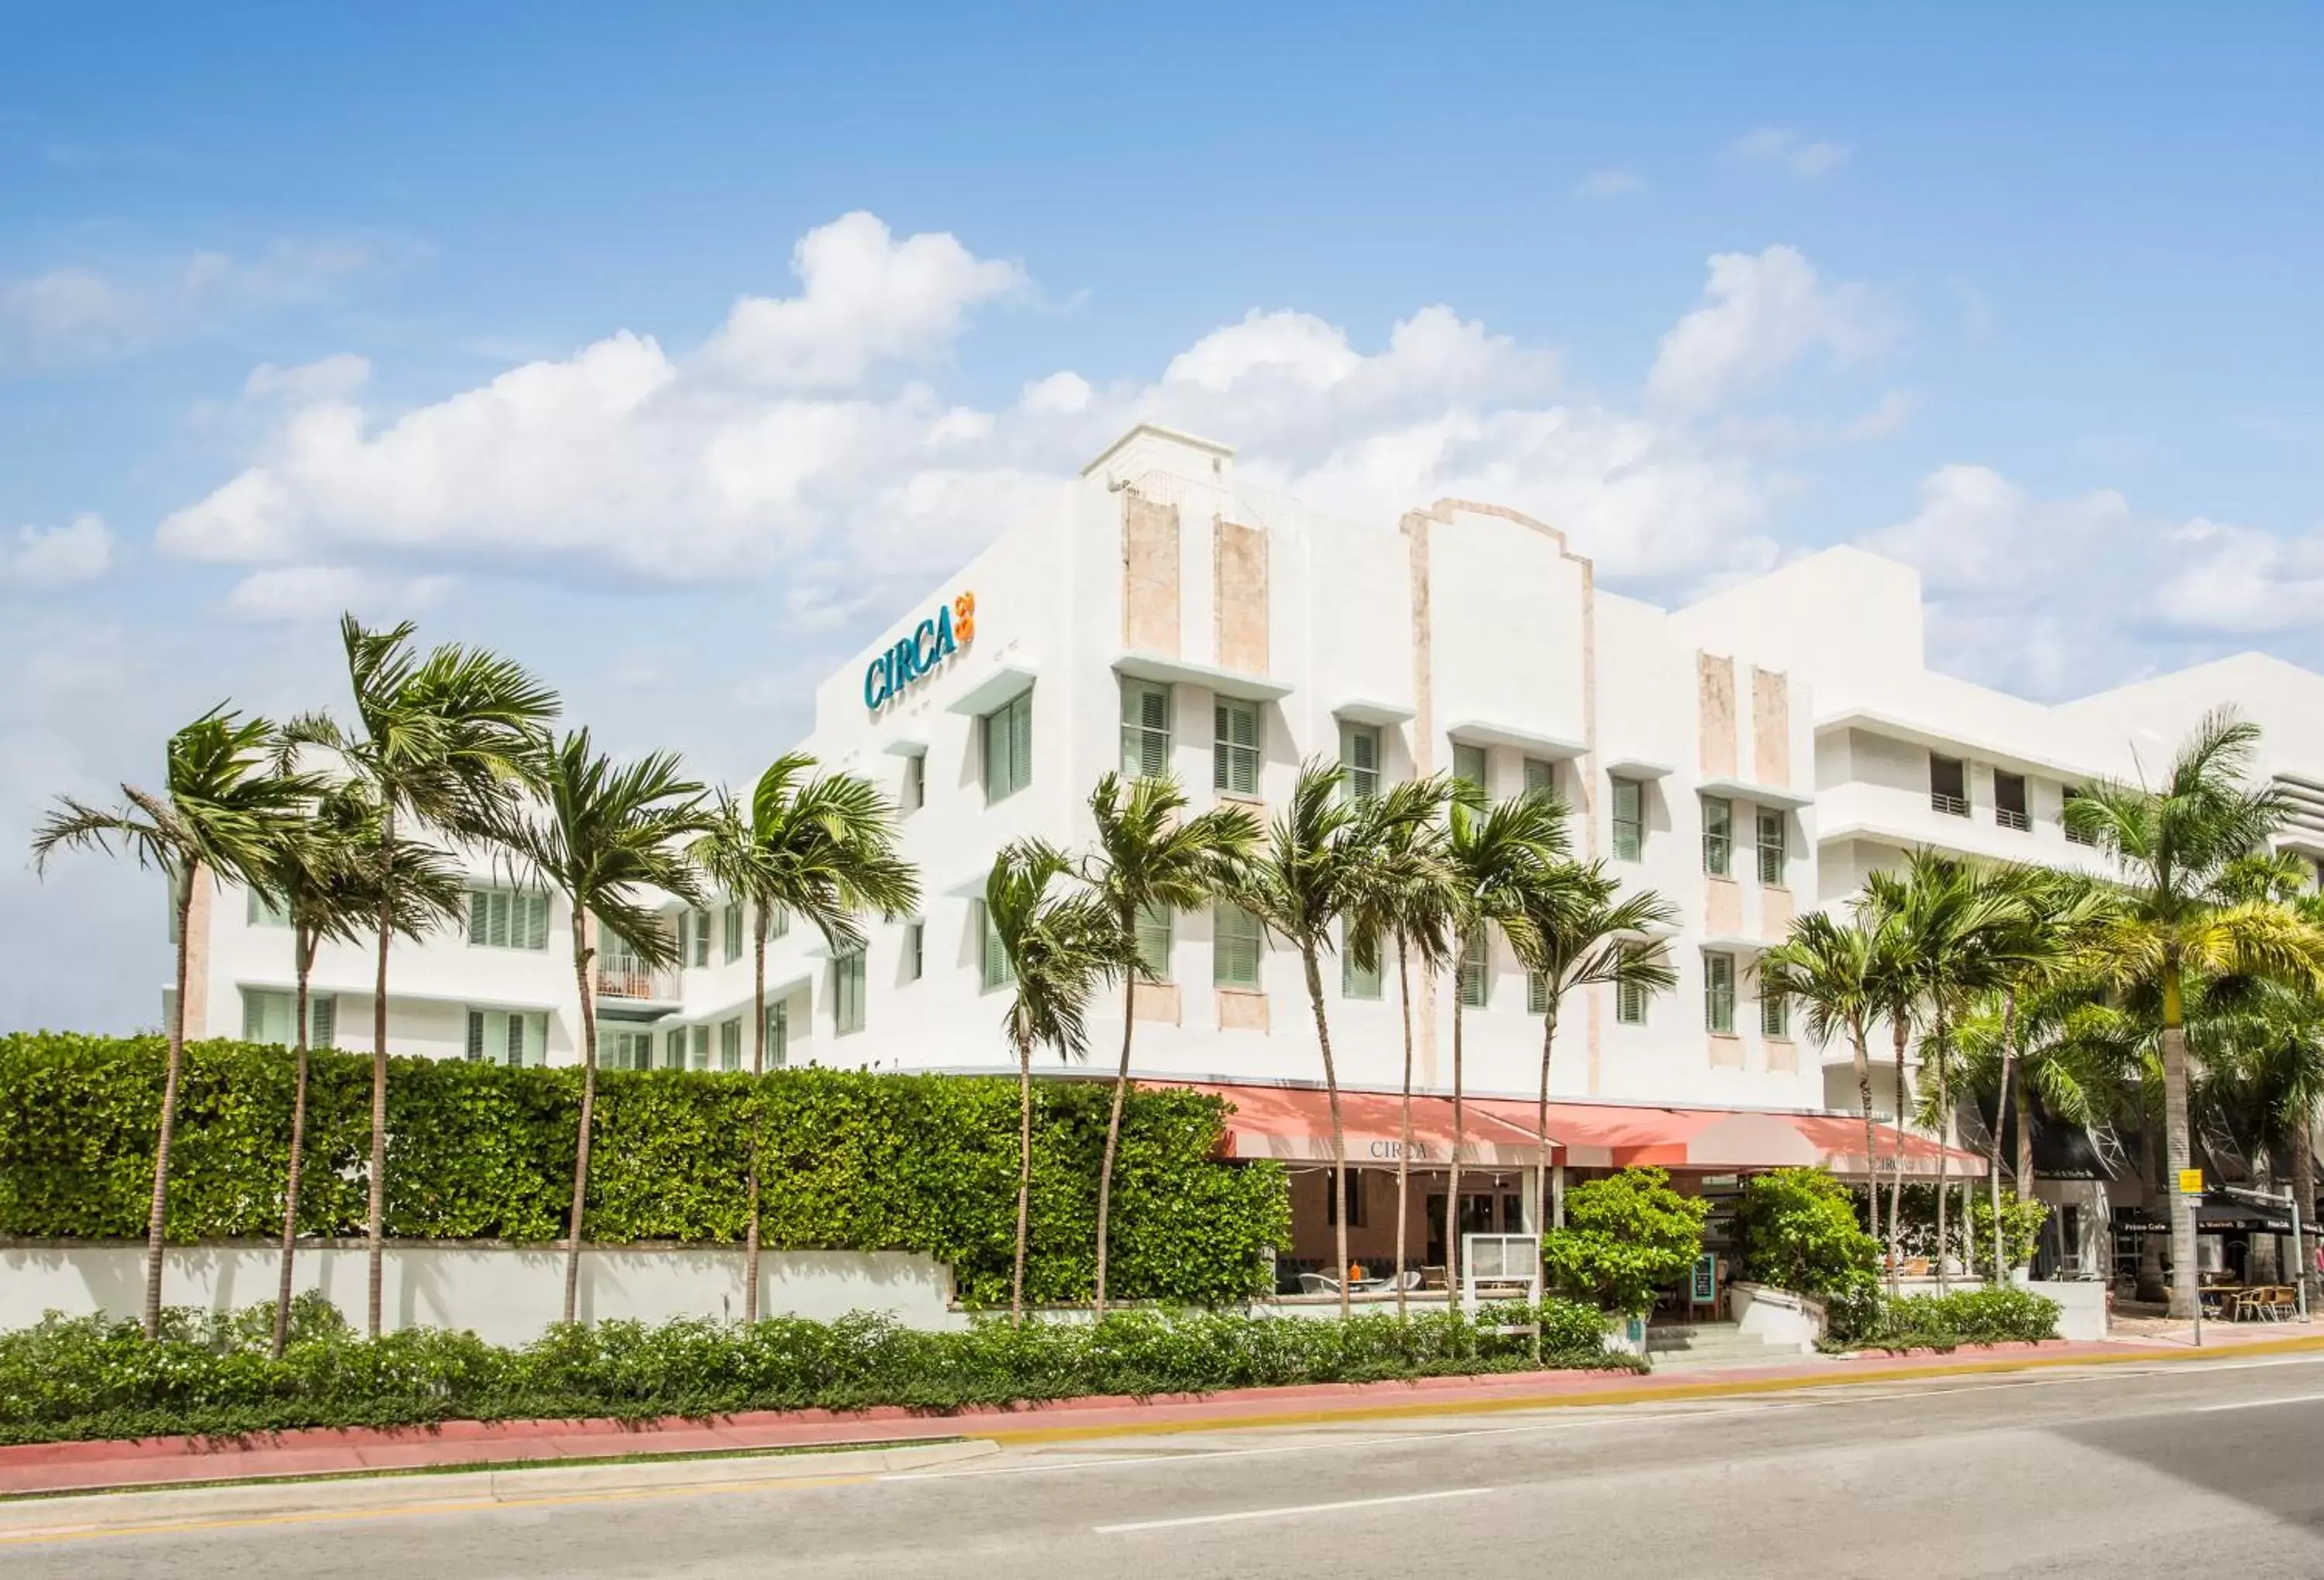 Facade/entrance, Property Building in Circa 39 Hotel Miami Beach